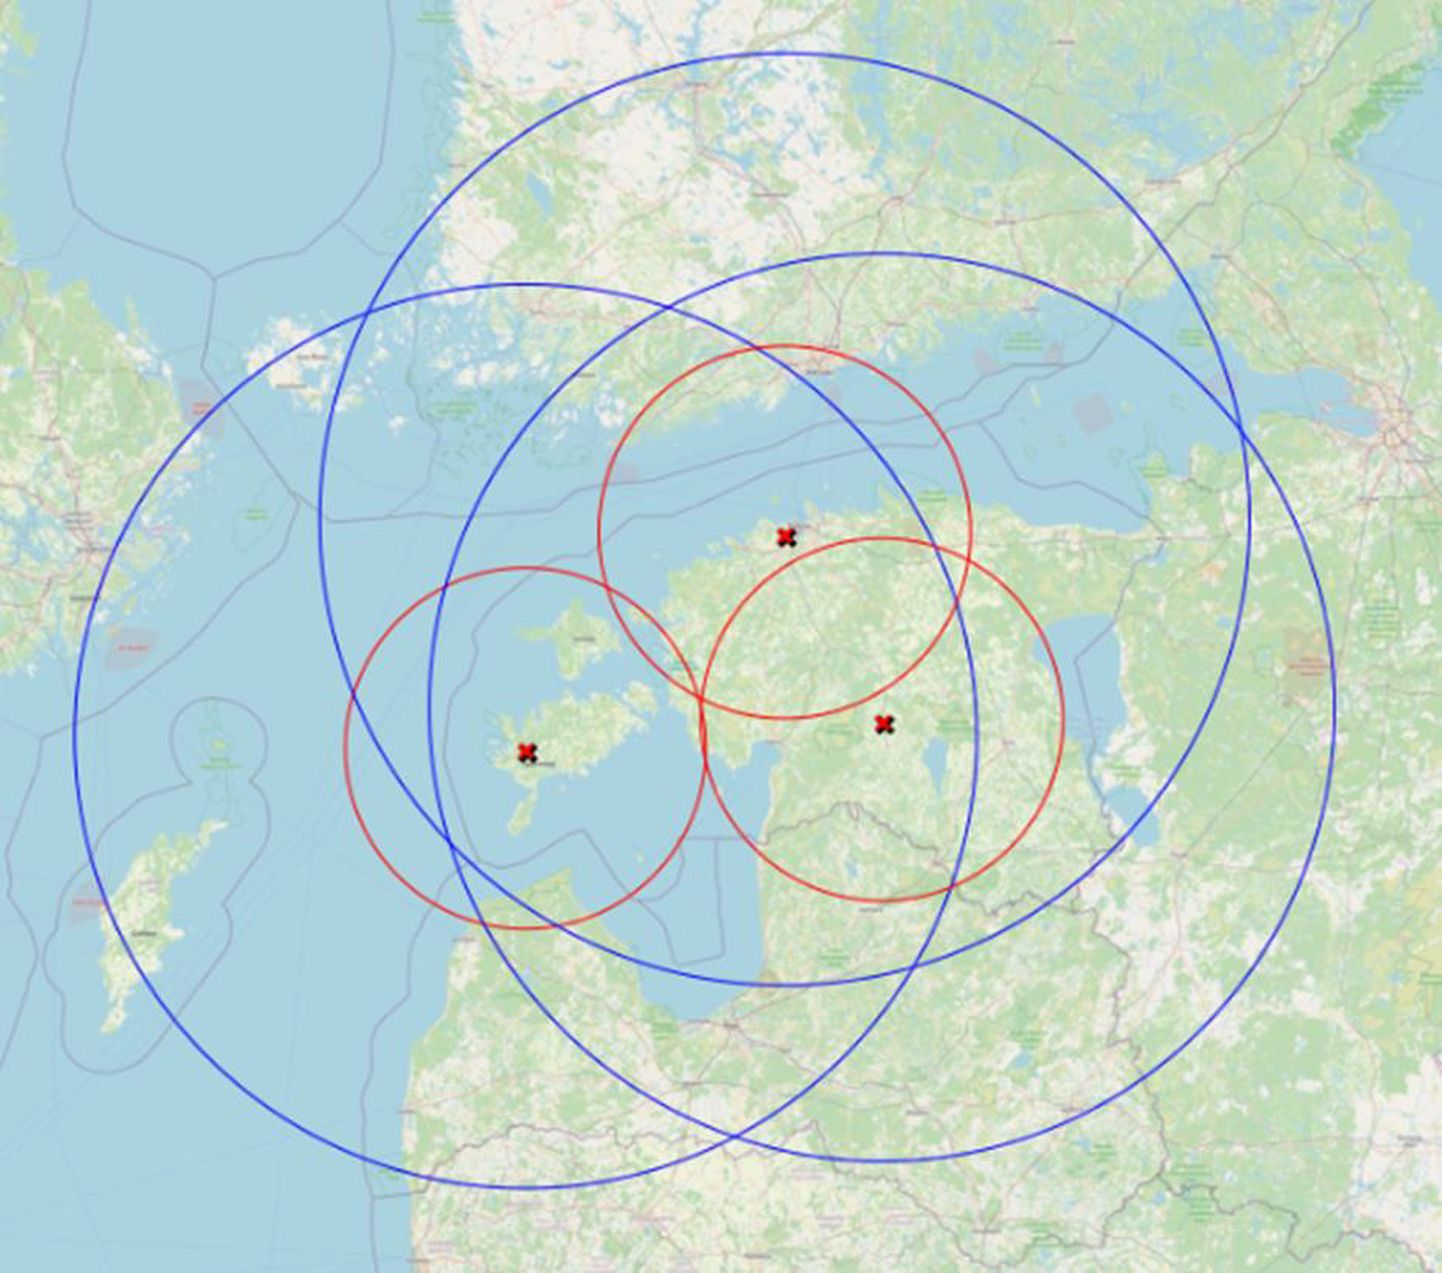 SAAREMAA RADARI mõõteulatus ulatuks oluliselt kaugemale läände Läänemerele kui olemasolevate Sürgavere ja Harku radarite puhul.